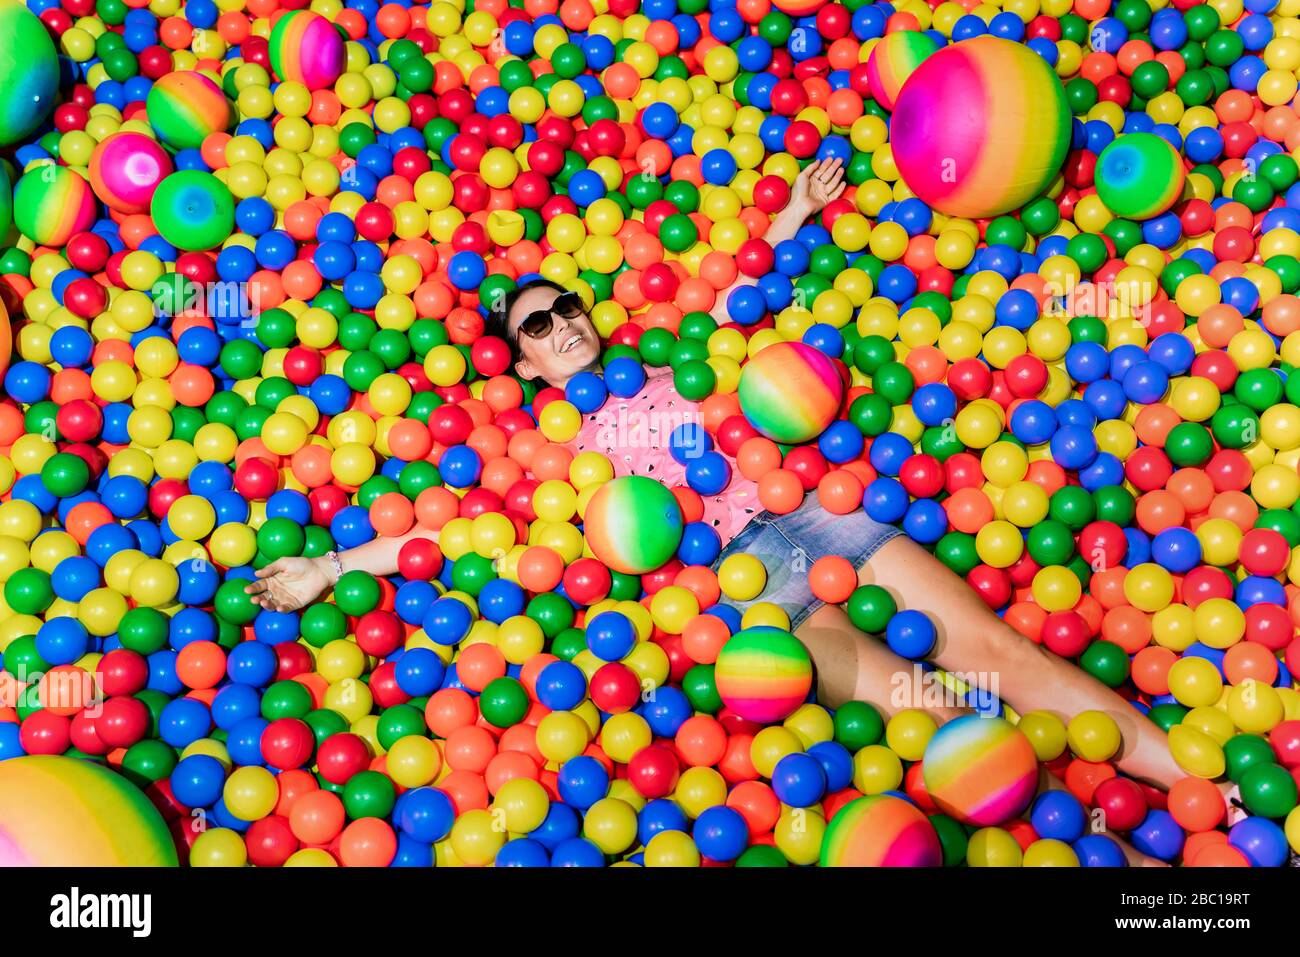 Retrato de una mujer feliz acostada entre muchas bolas de colores Foto de stock